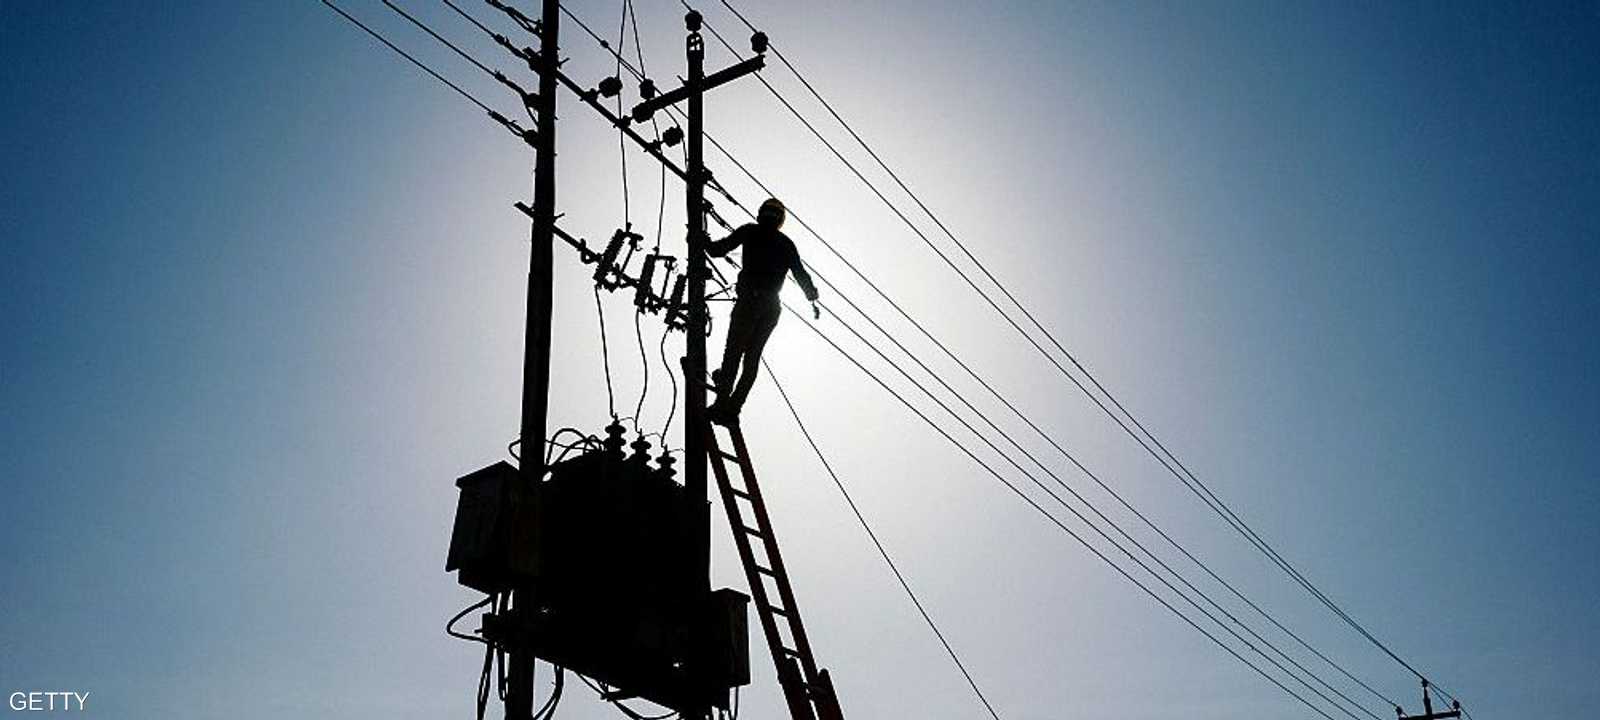 العراق يعاني منذ سنوات من مشكلة في الكهرباء.